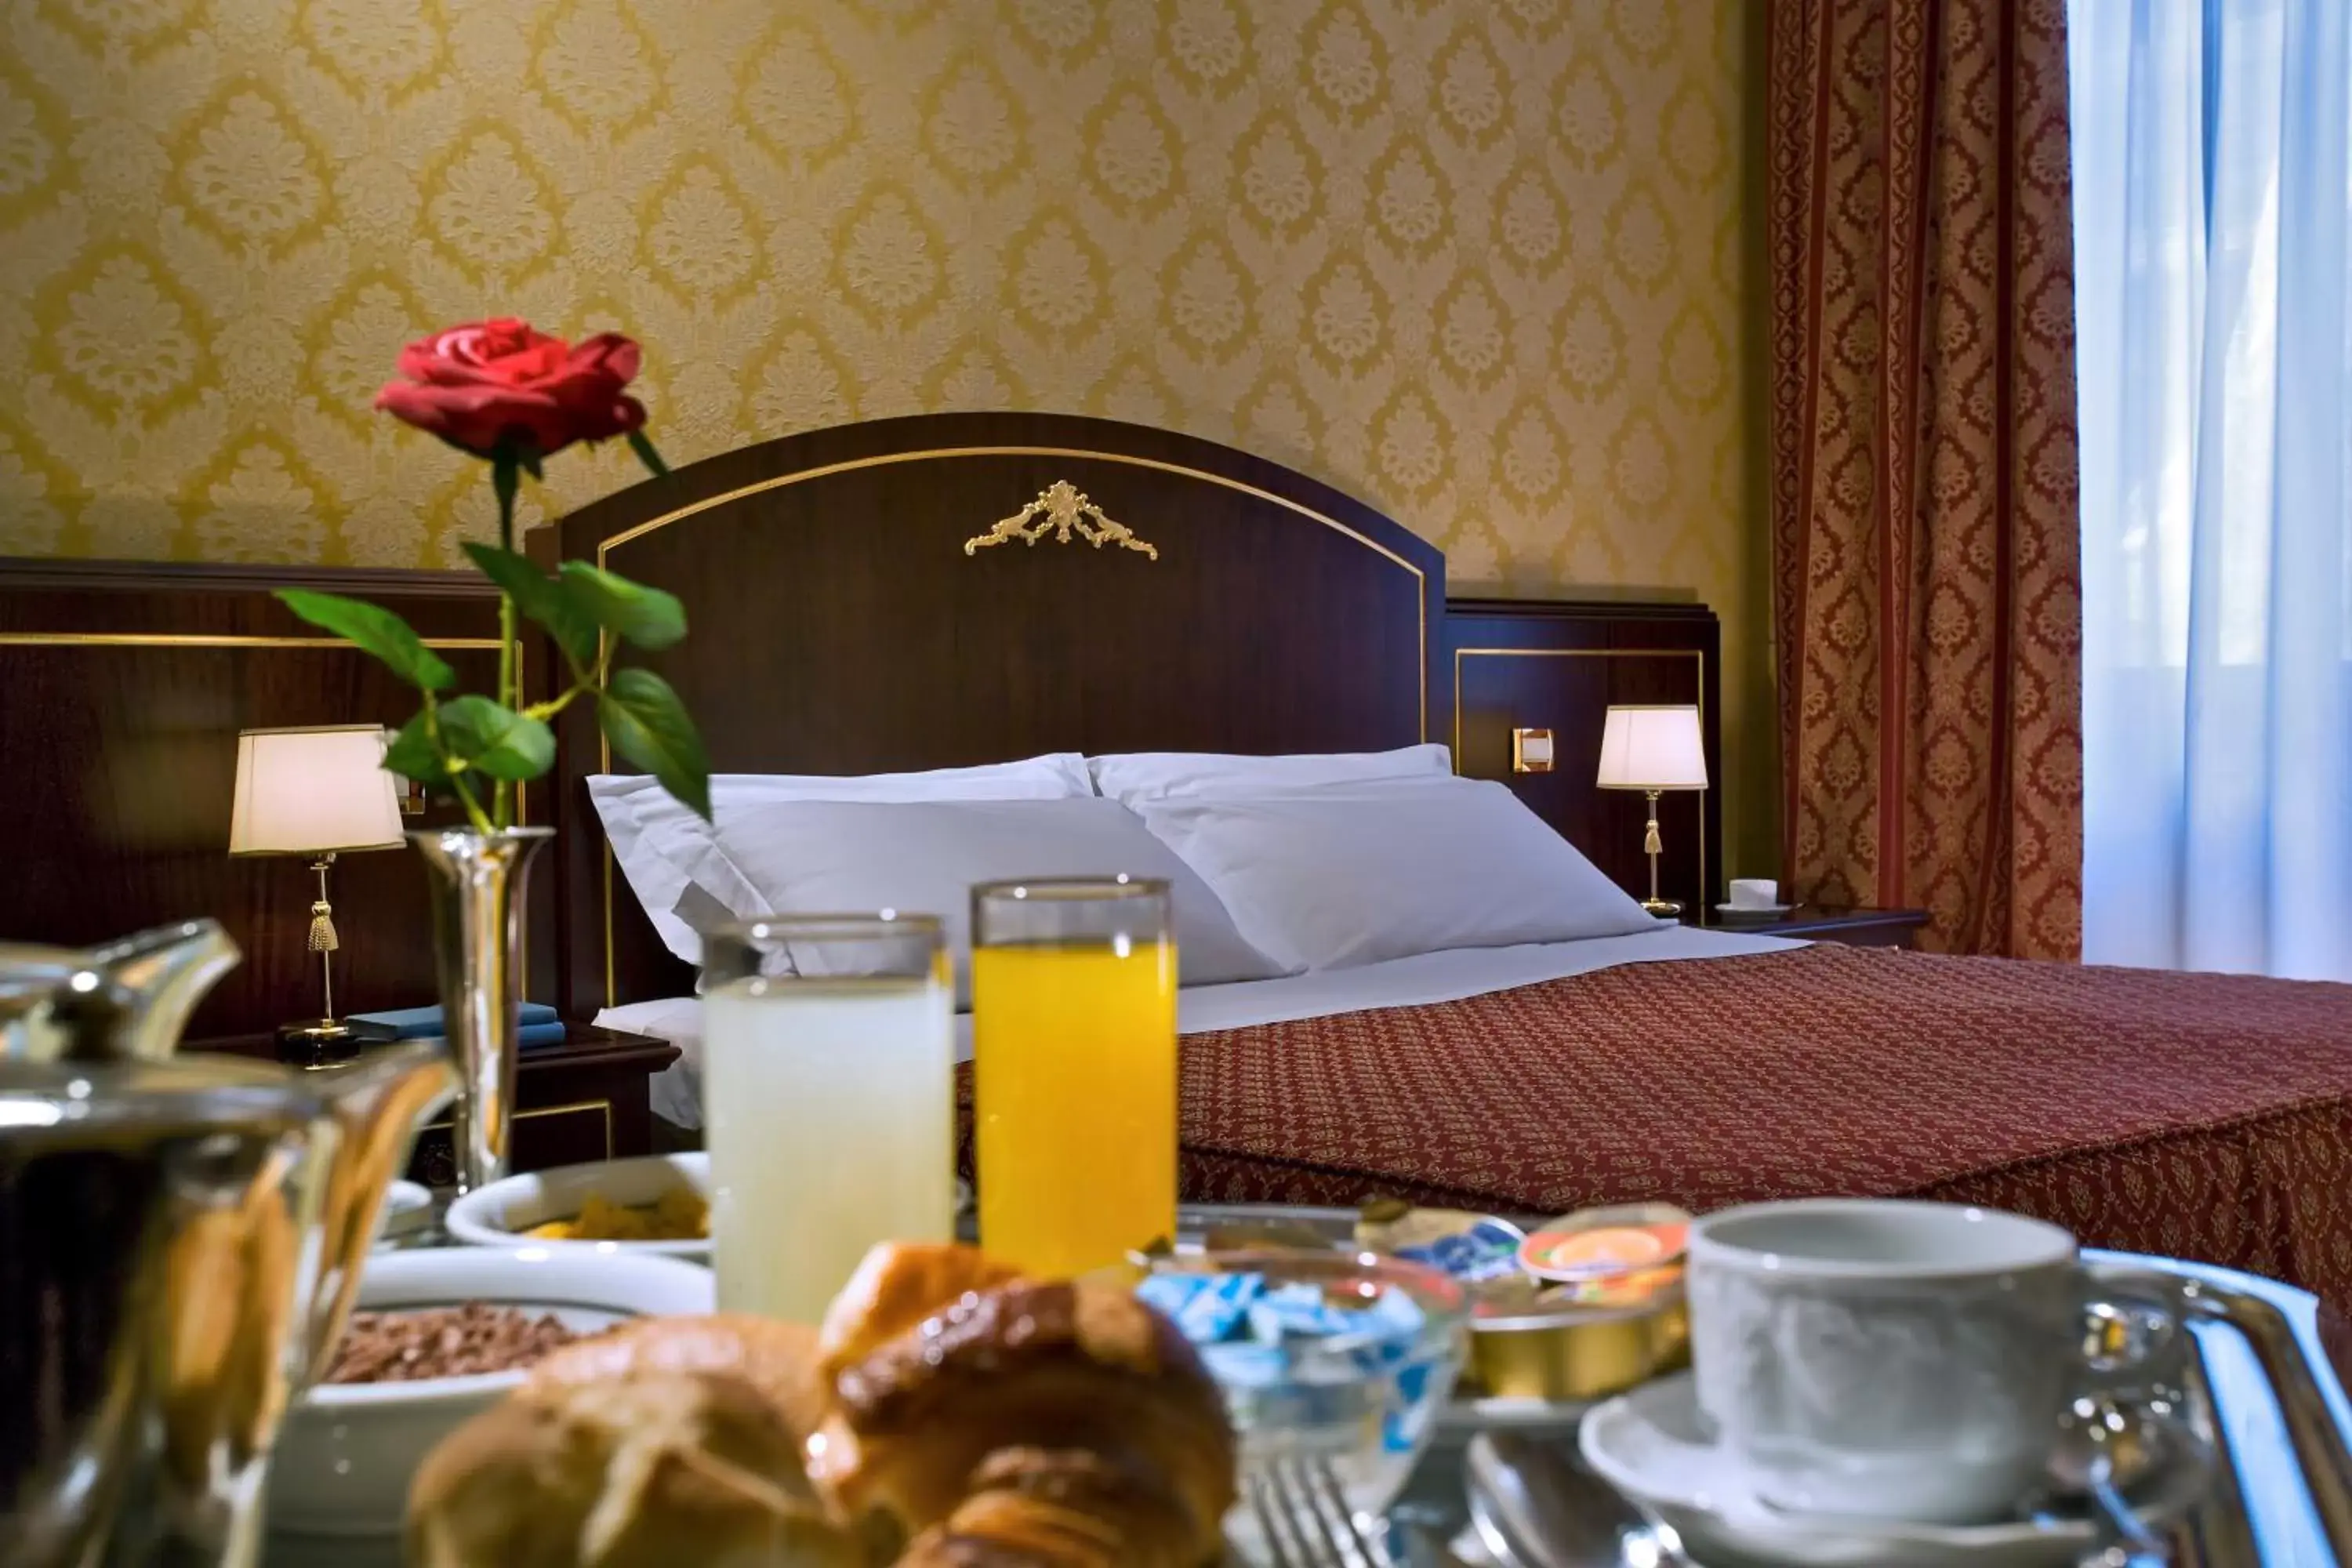 Breakfast in Hotel Mondial